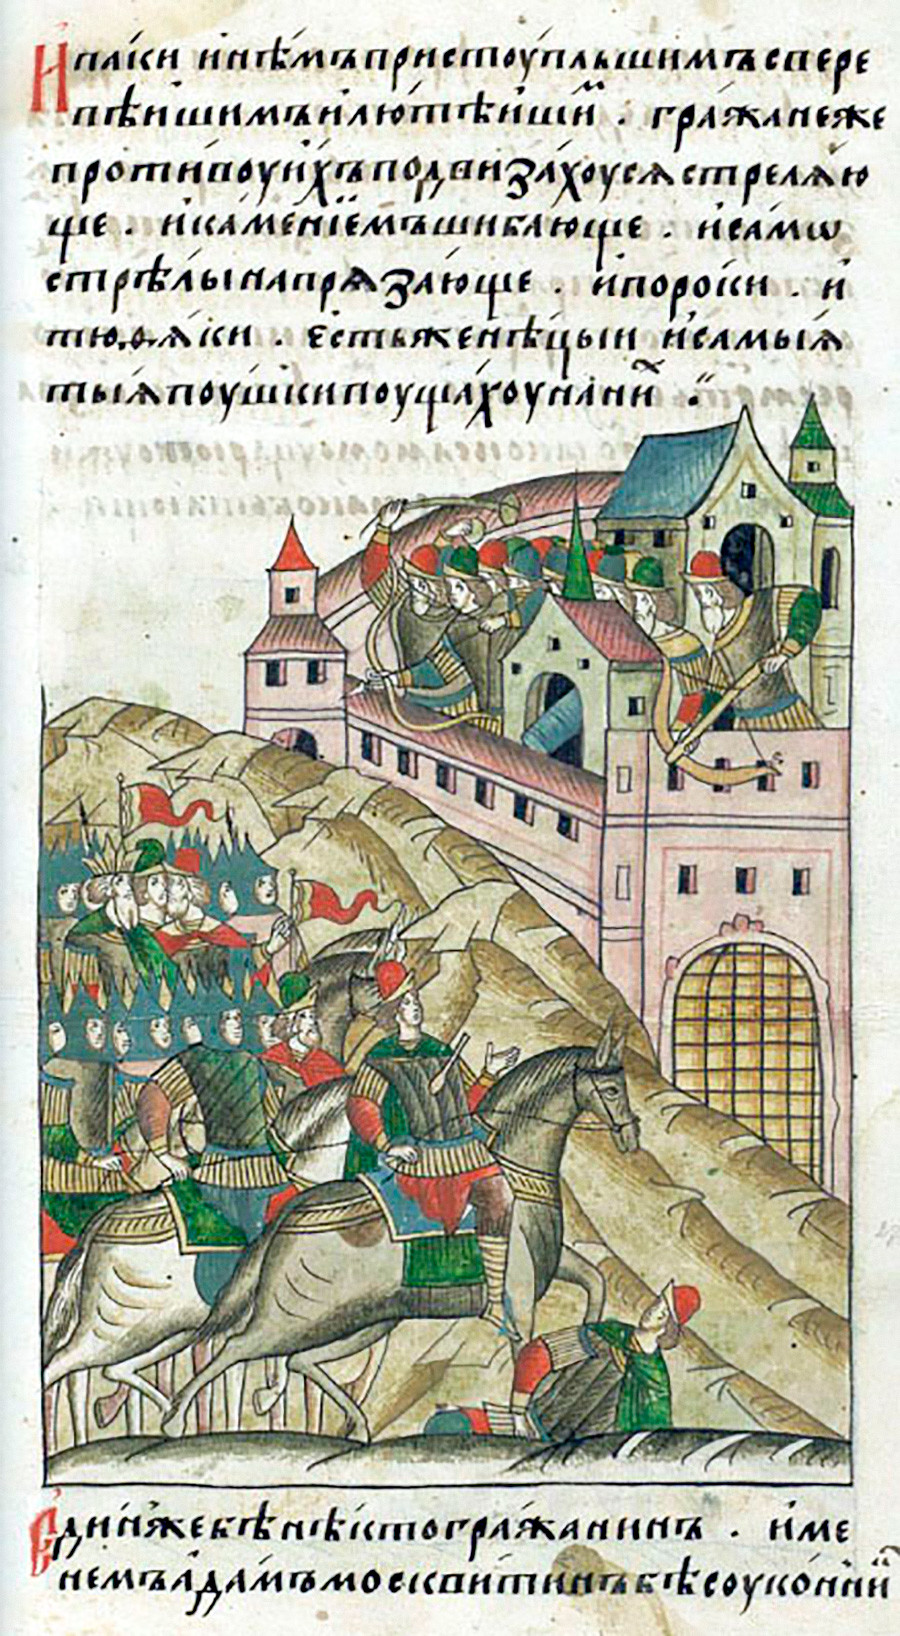 L’assedio di Mosca del Khan Toktamish del 1382. Illustrazione tratta da una cronaca del XVI secolo. 
Un cannone da fortezza può essere visto sulla torre centrale delle mura della città